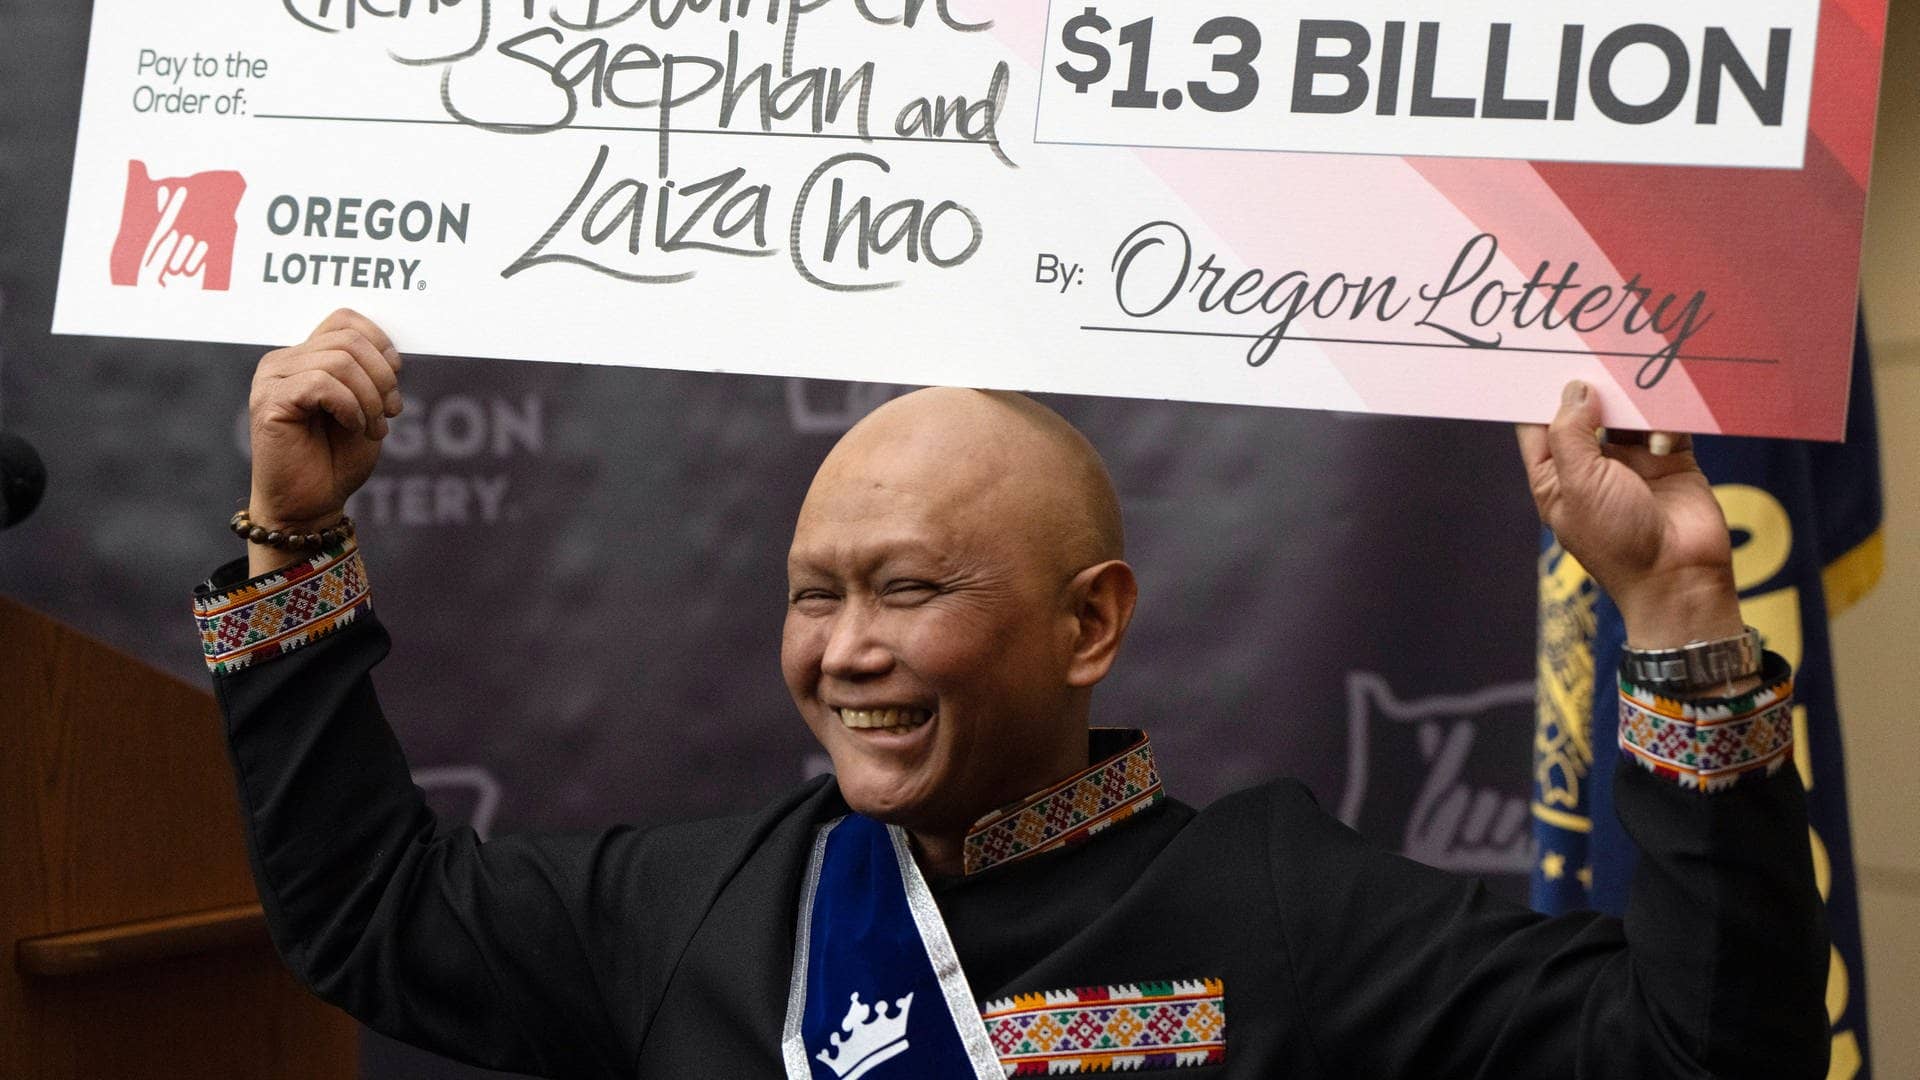 Lotto-Gewinner Cheng Saephan bei der Pressekonferenz zu seinem Milliarden-Gewinn